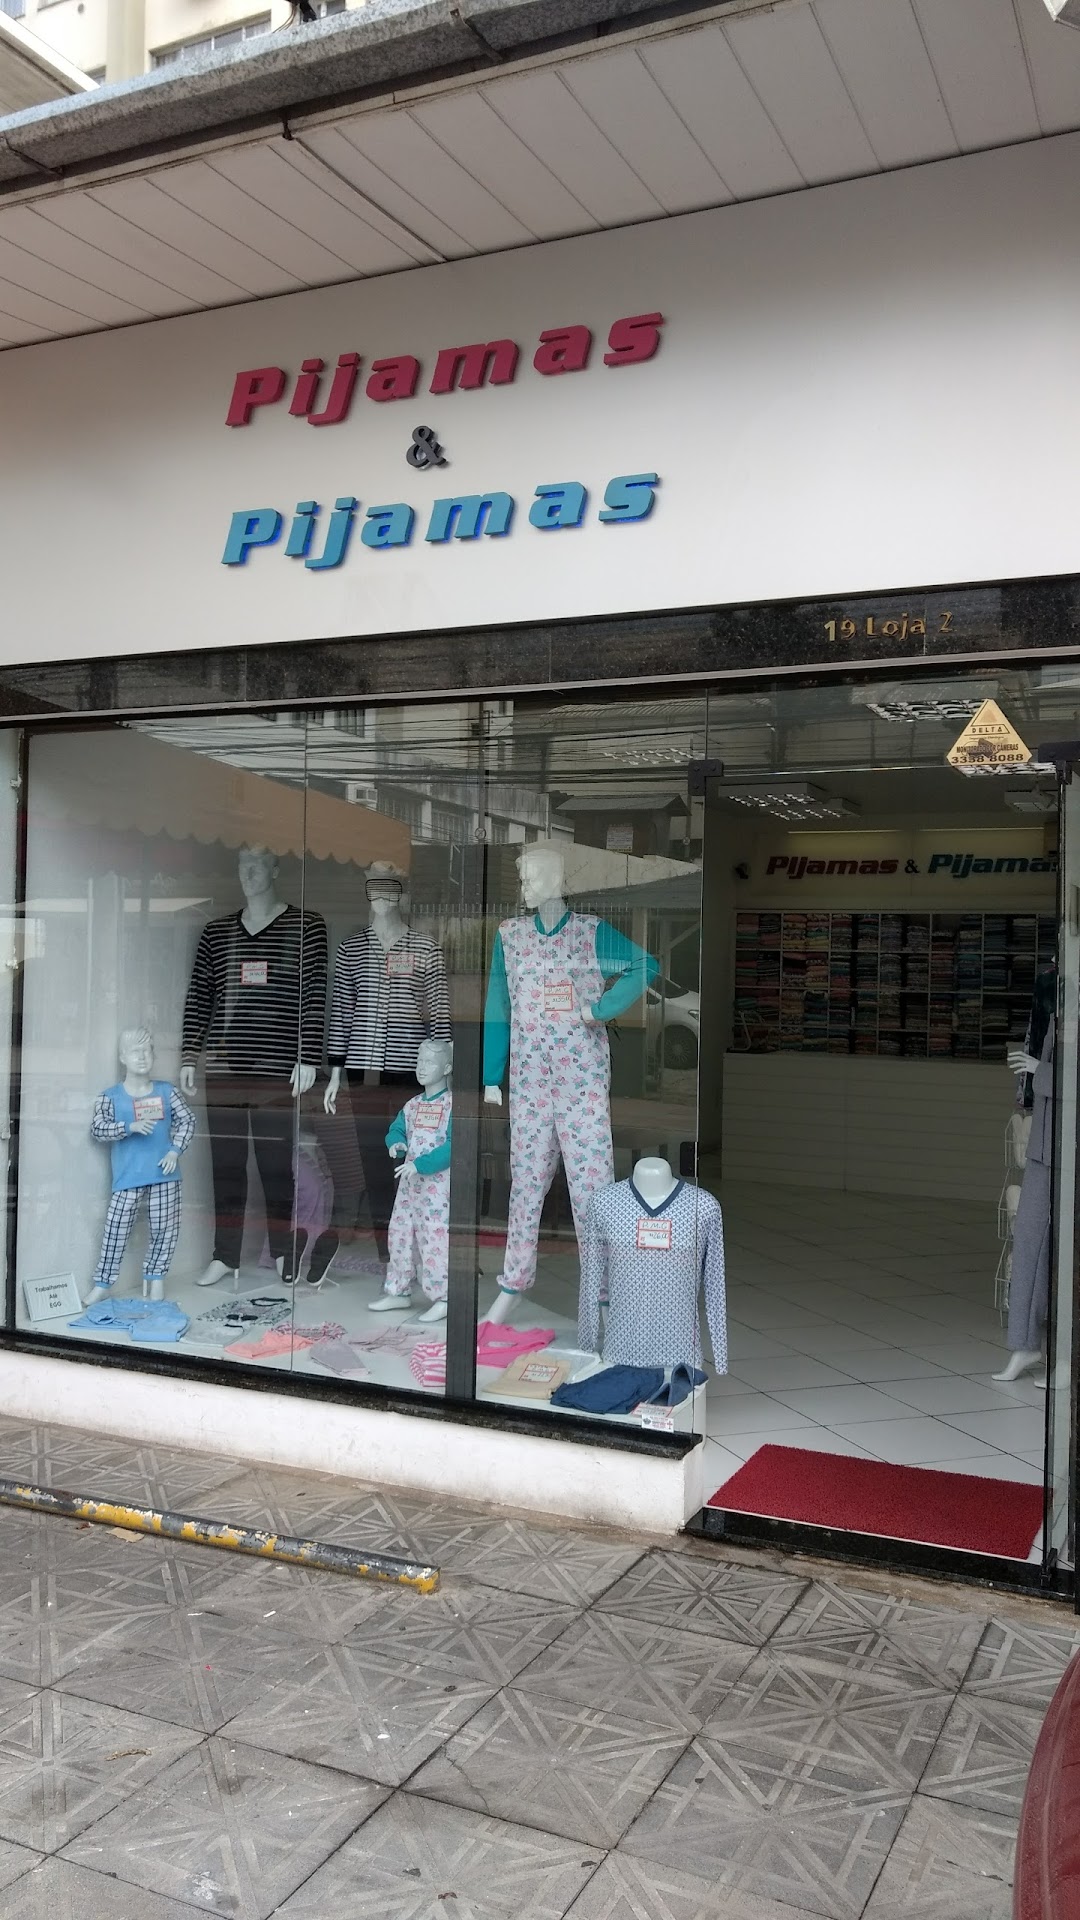 Pijamas & Pijamas